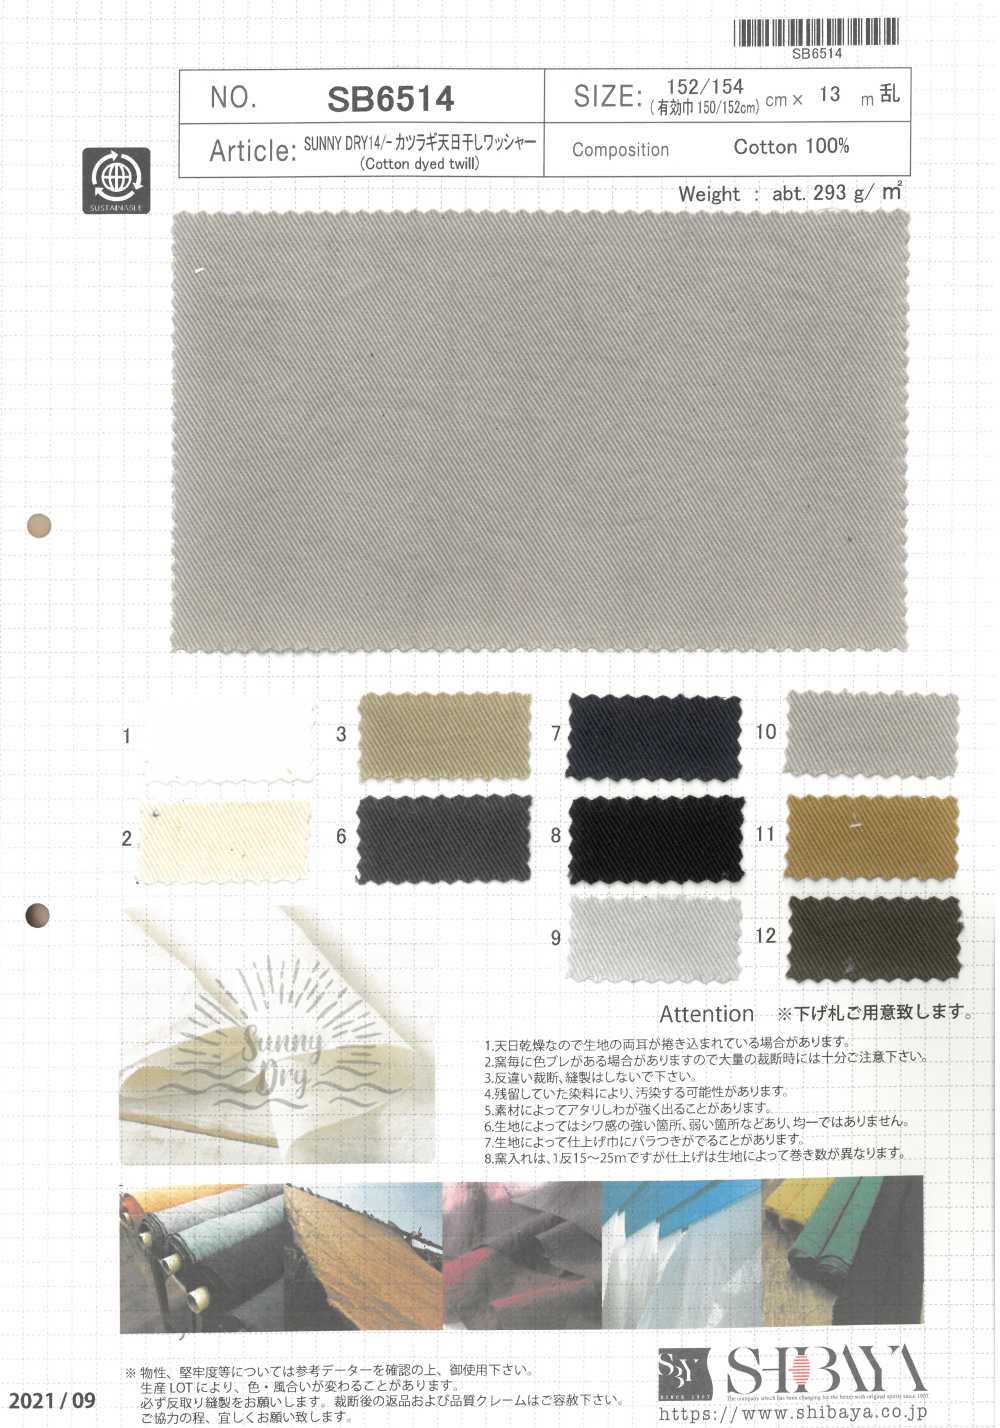 SB6514 SUNNY DRY 14/ Perceuse Séchée Au Soleil Traitement De Laveuse[Fabrication De Textile] SHIBAYA